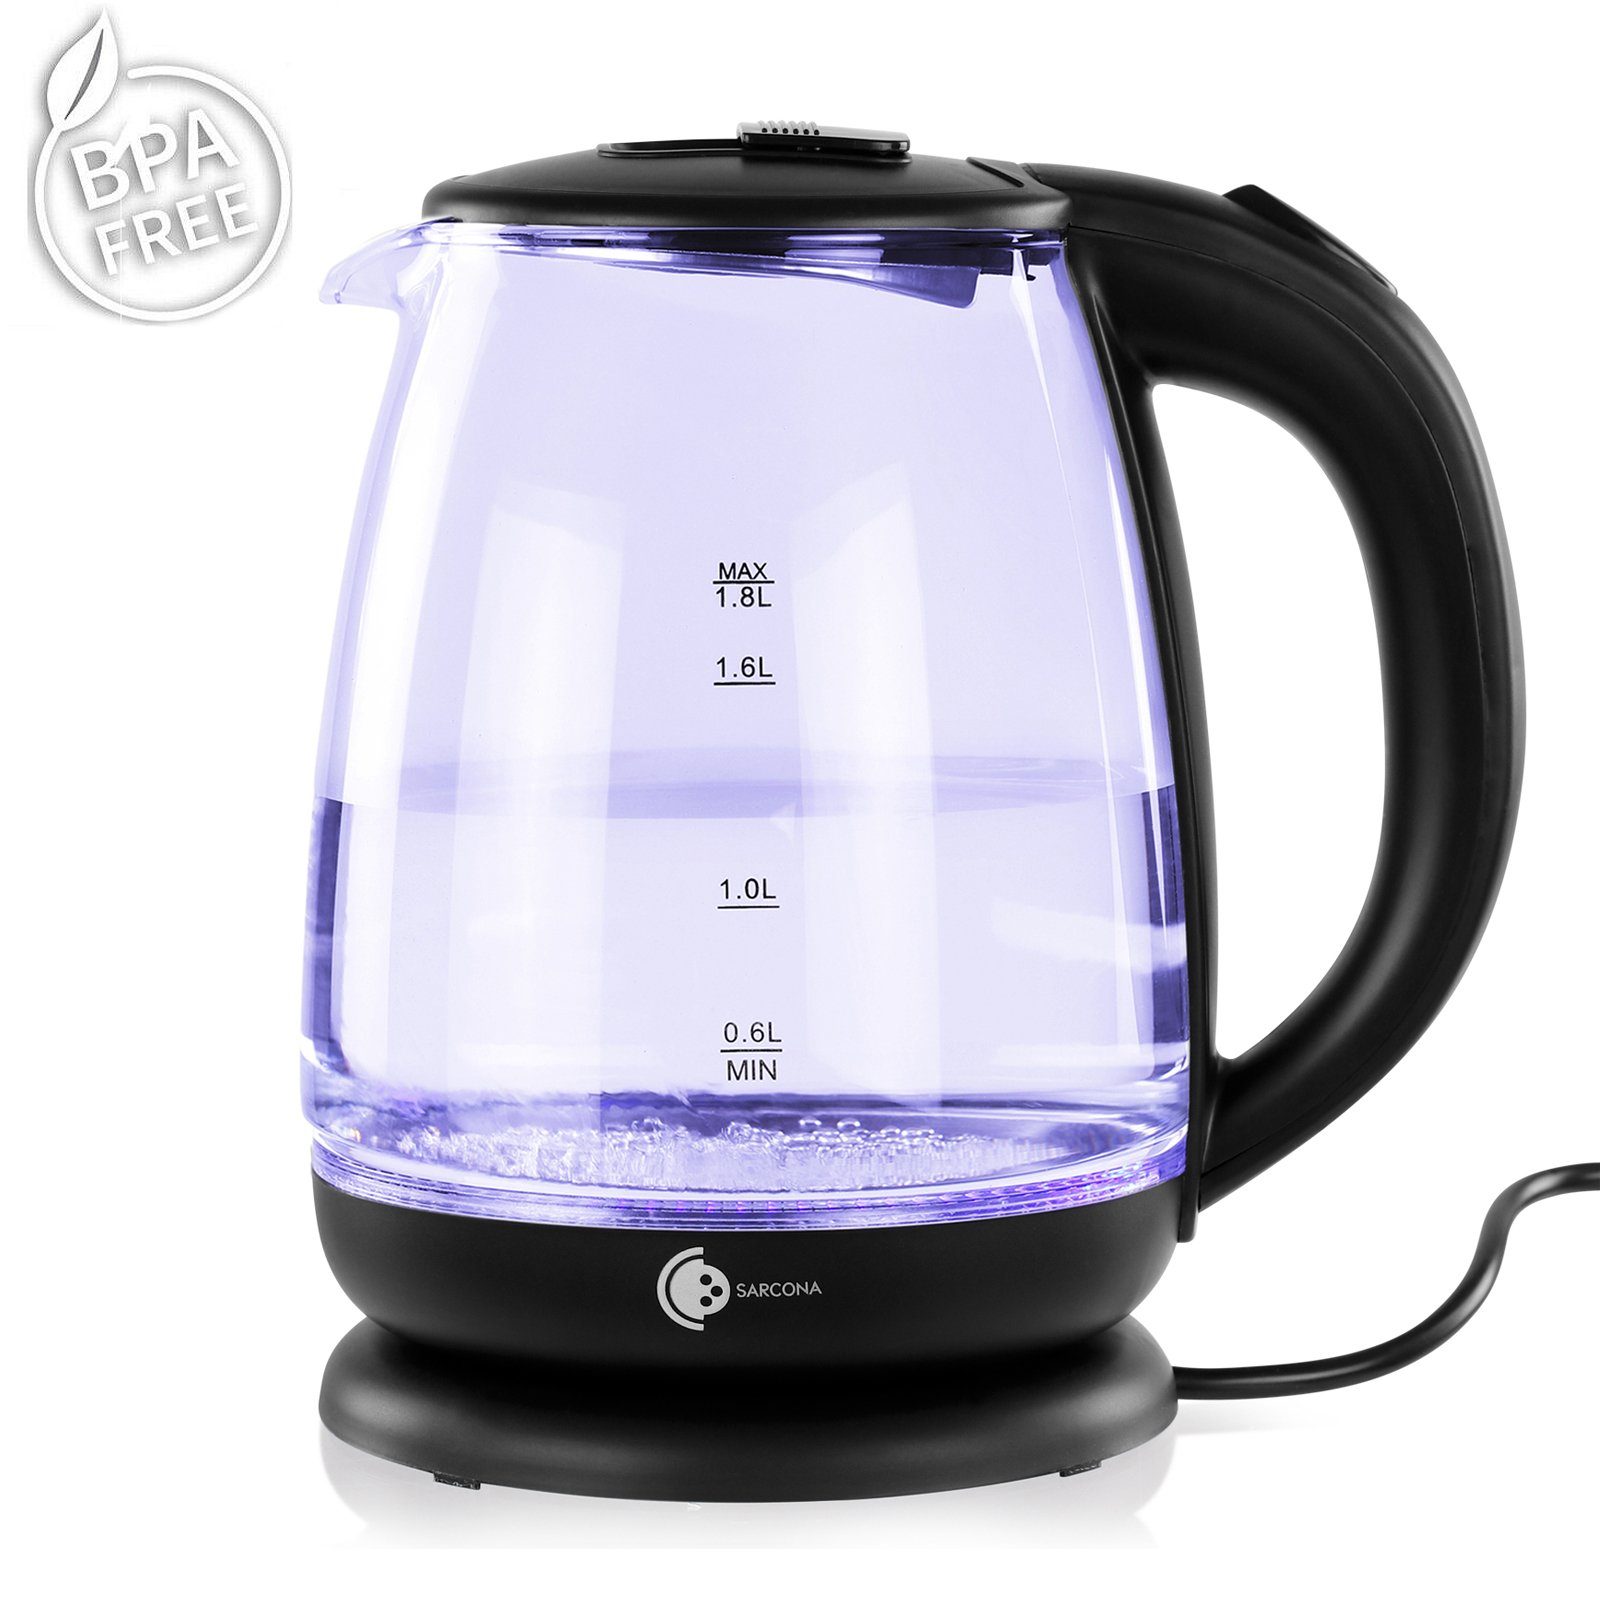 Sarcona Wasserkocher Wasserkocher Schwarz Glas 1800,00 Beleuchtung 1,8 1,8l Liter W, LED WK10888, 1800W Glas, Fassungsvermögen